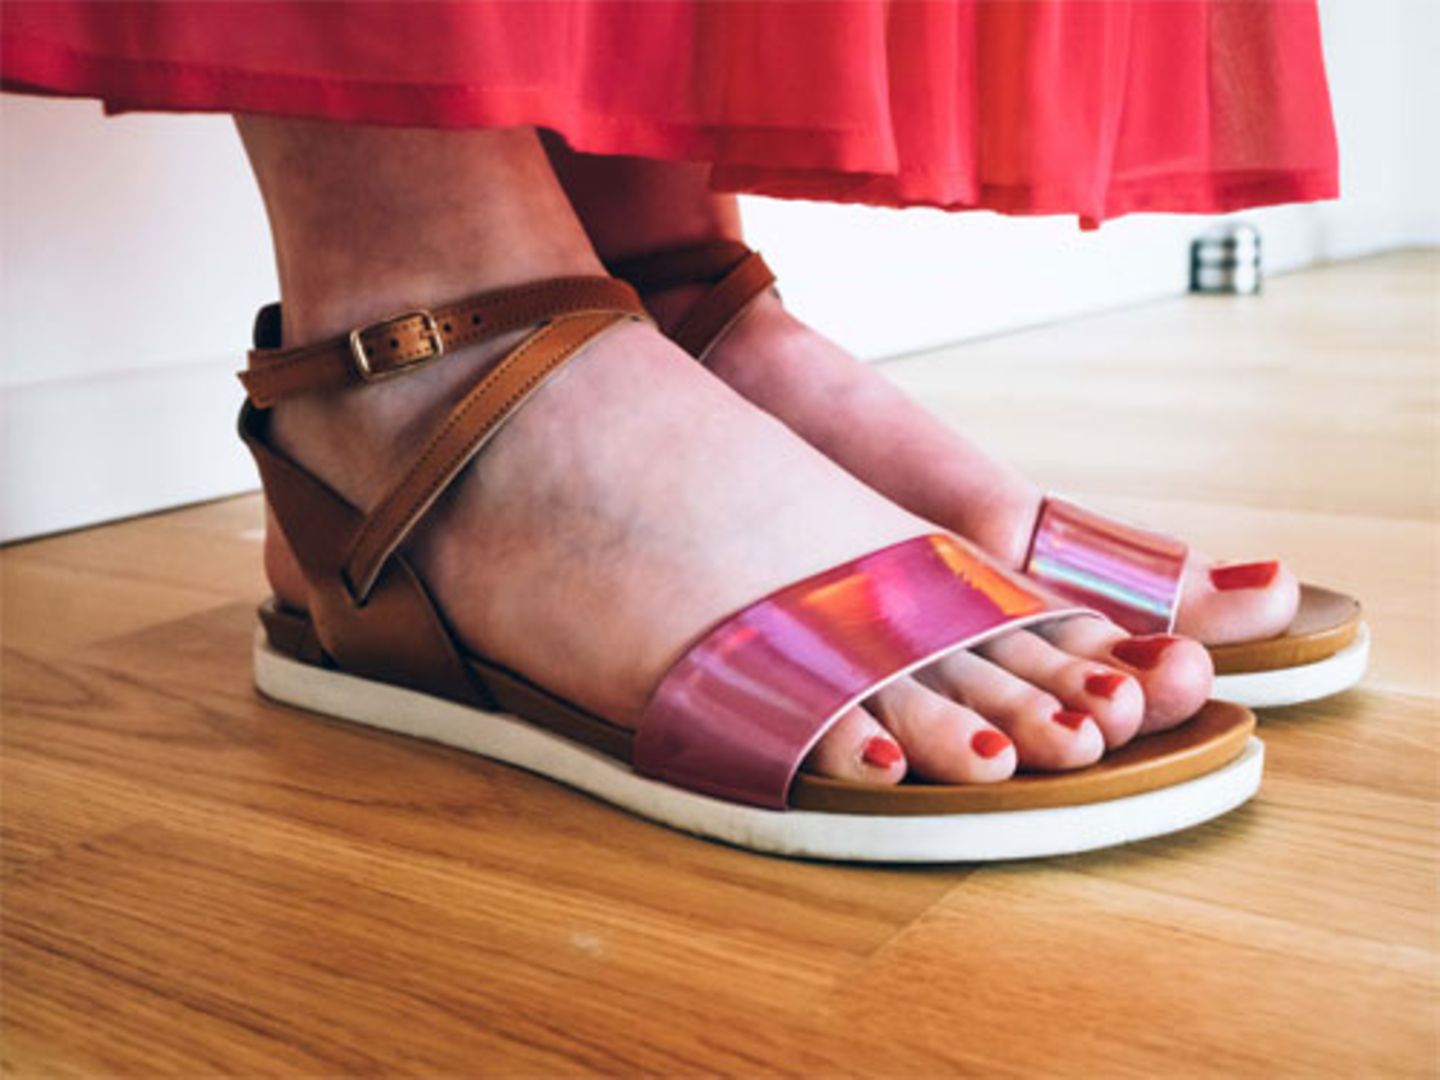 Auch wenn Julia kein Problem mit High-Heels hat, bei diesem Look wären sie zu viel. Entspannte Sandalen mit coolem Holo-Effekt passen viel besser zu einem Spaziergang unter griechischer Sonne.